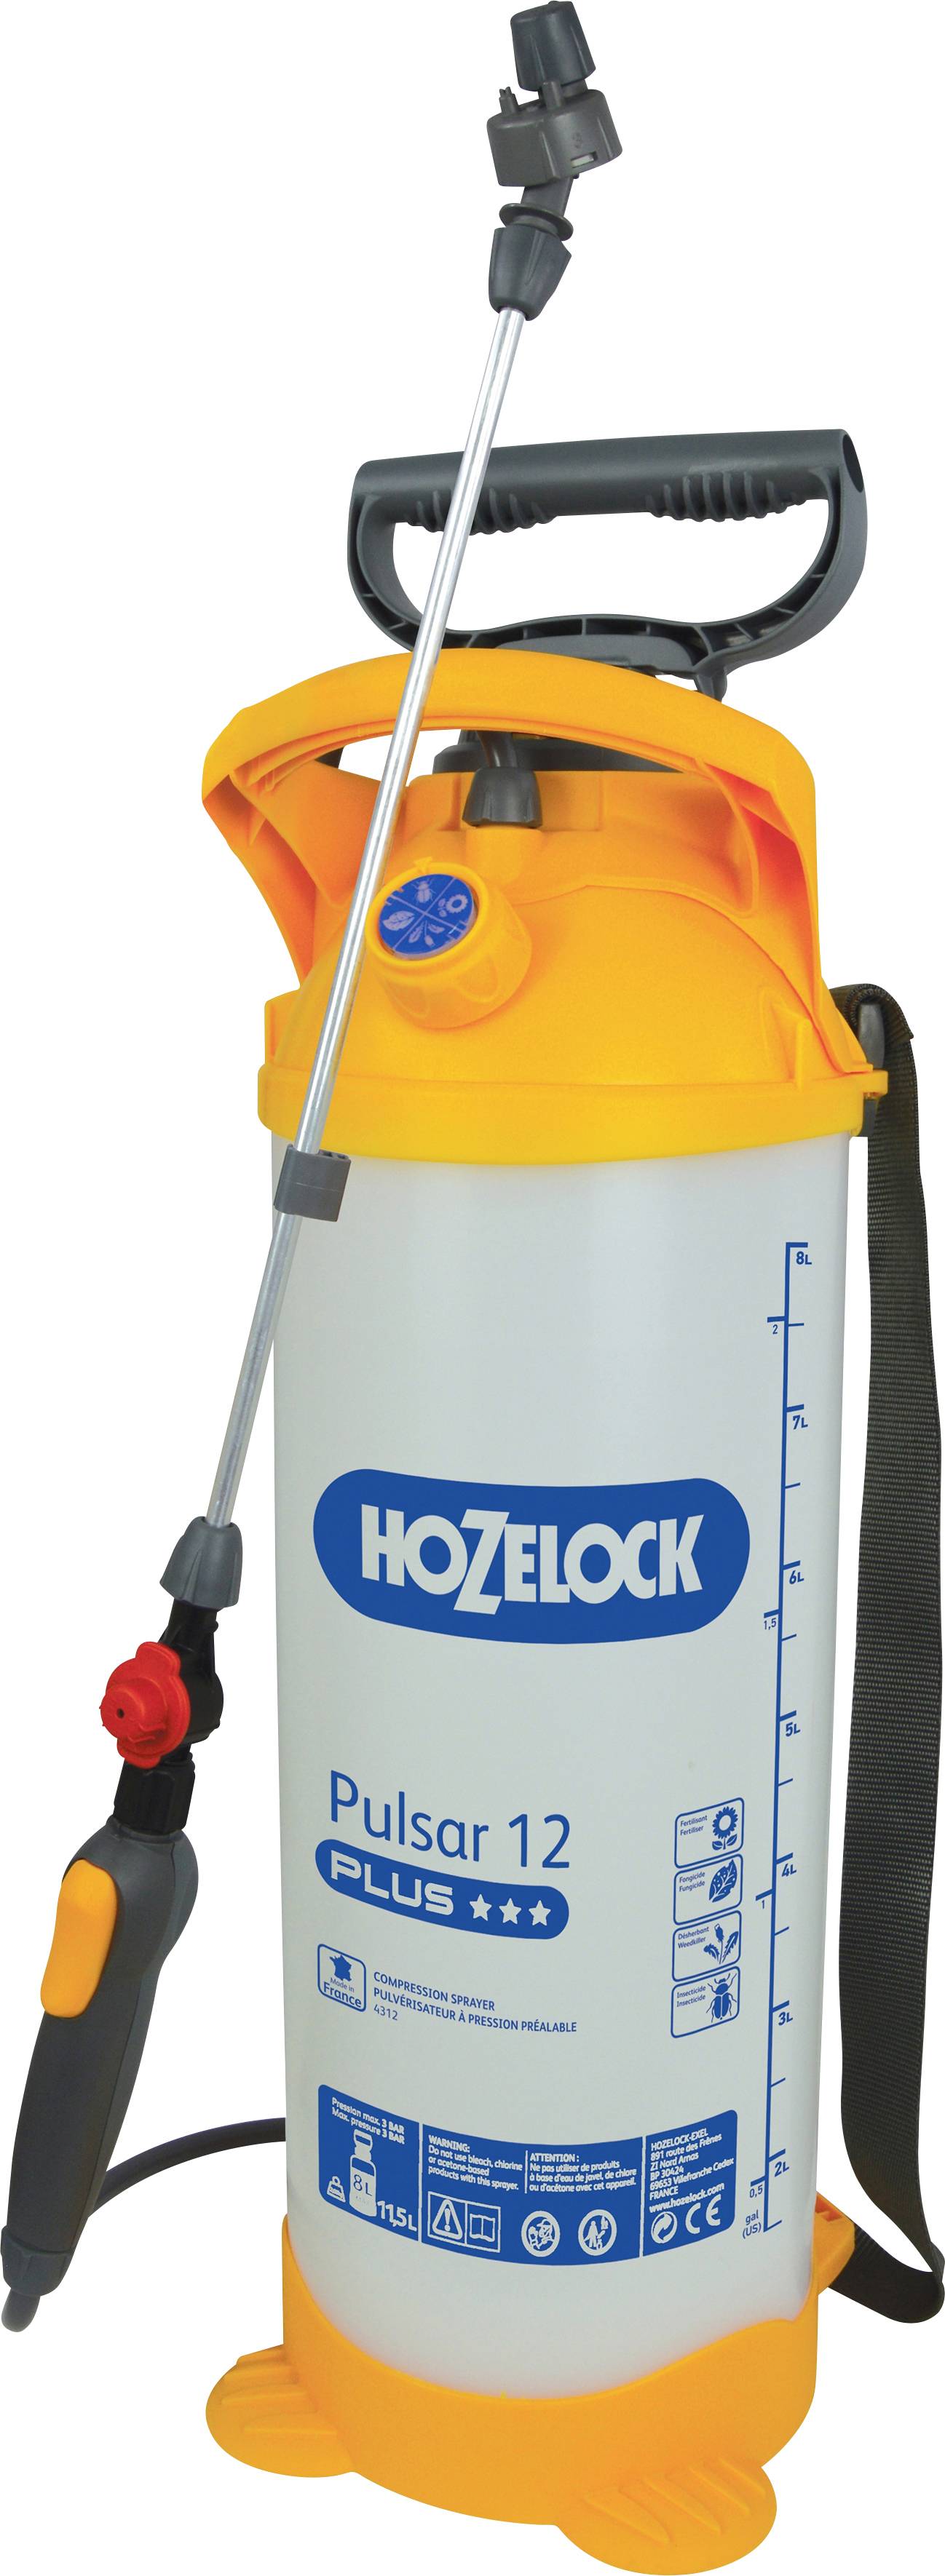 Hozelock 4312 0000 Pulsar 12 l Pump sprayer 12 l | Conrad.com